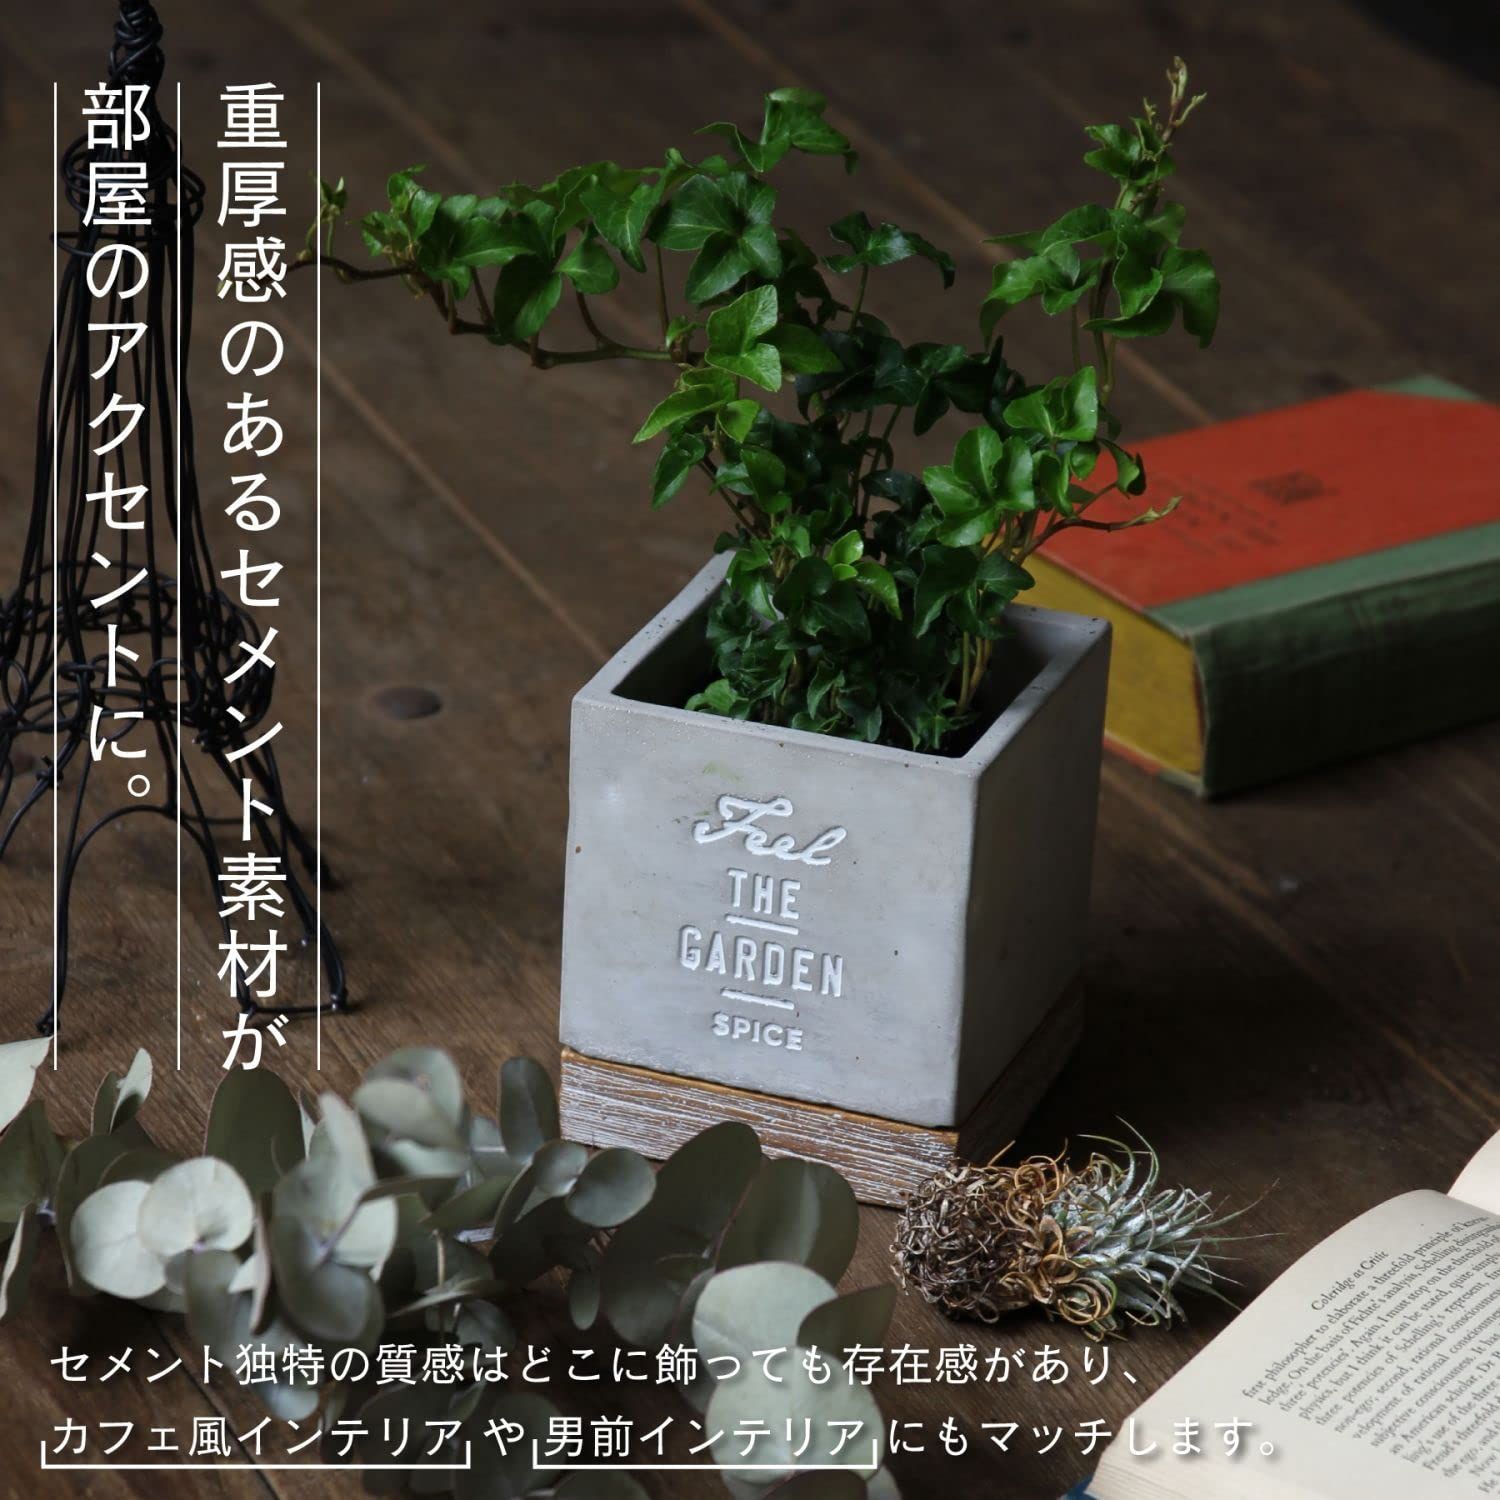 スタイル:スクエアS】OF LIFE(スパイス) すき間に置きやすい 植木鉢 インテリアショップ メルカリ